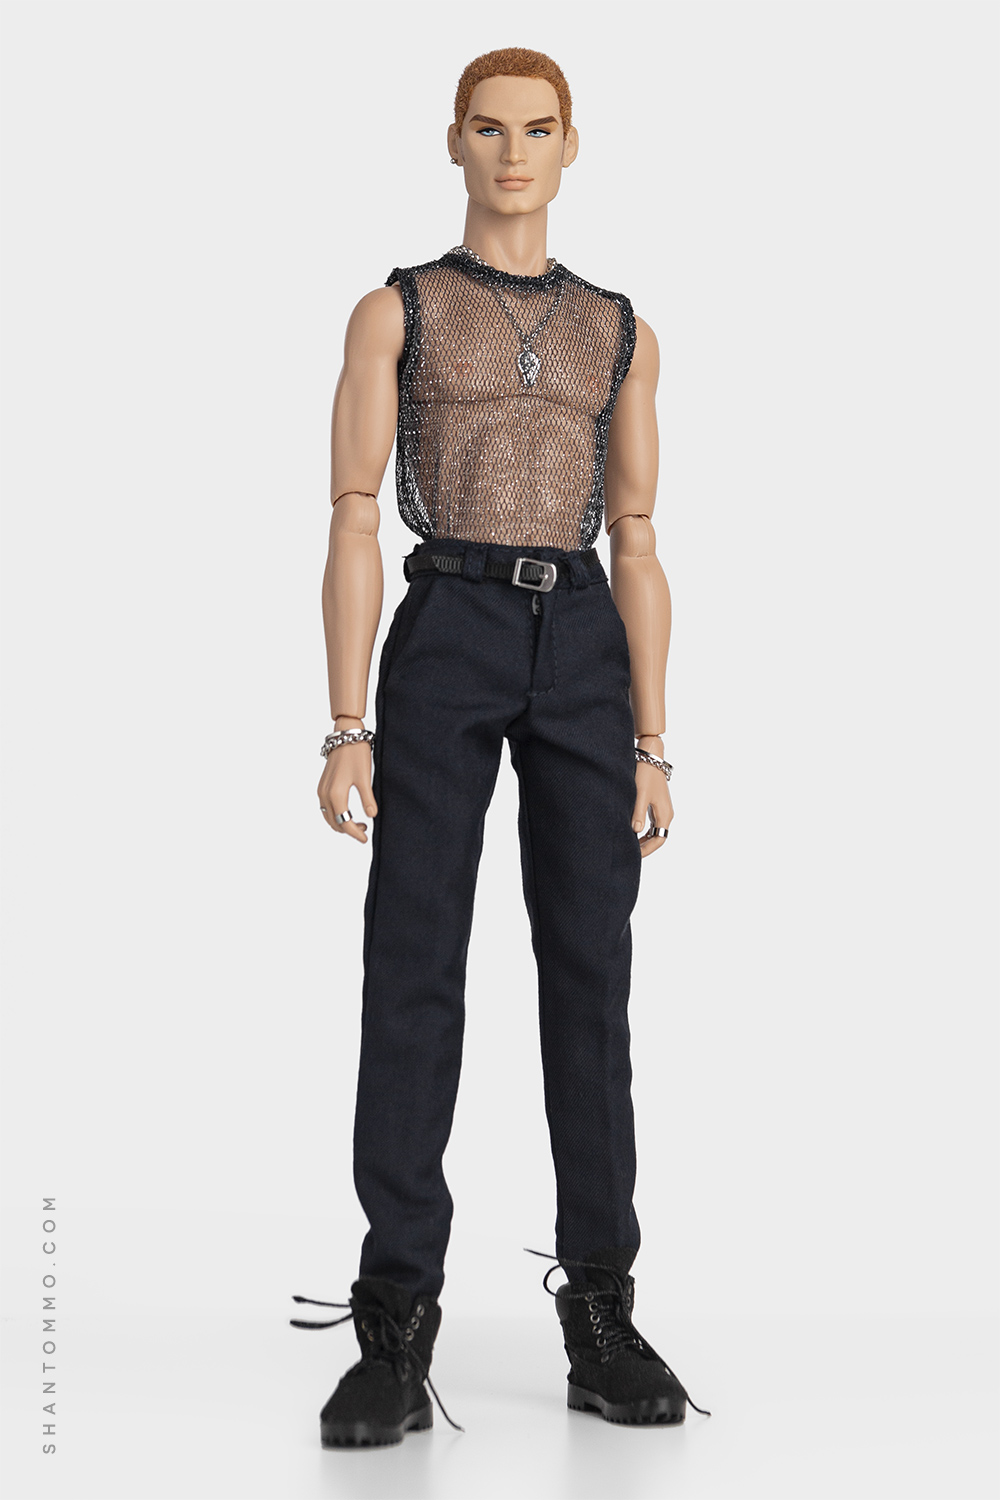 Homme Basics: Black Mesh Vest